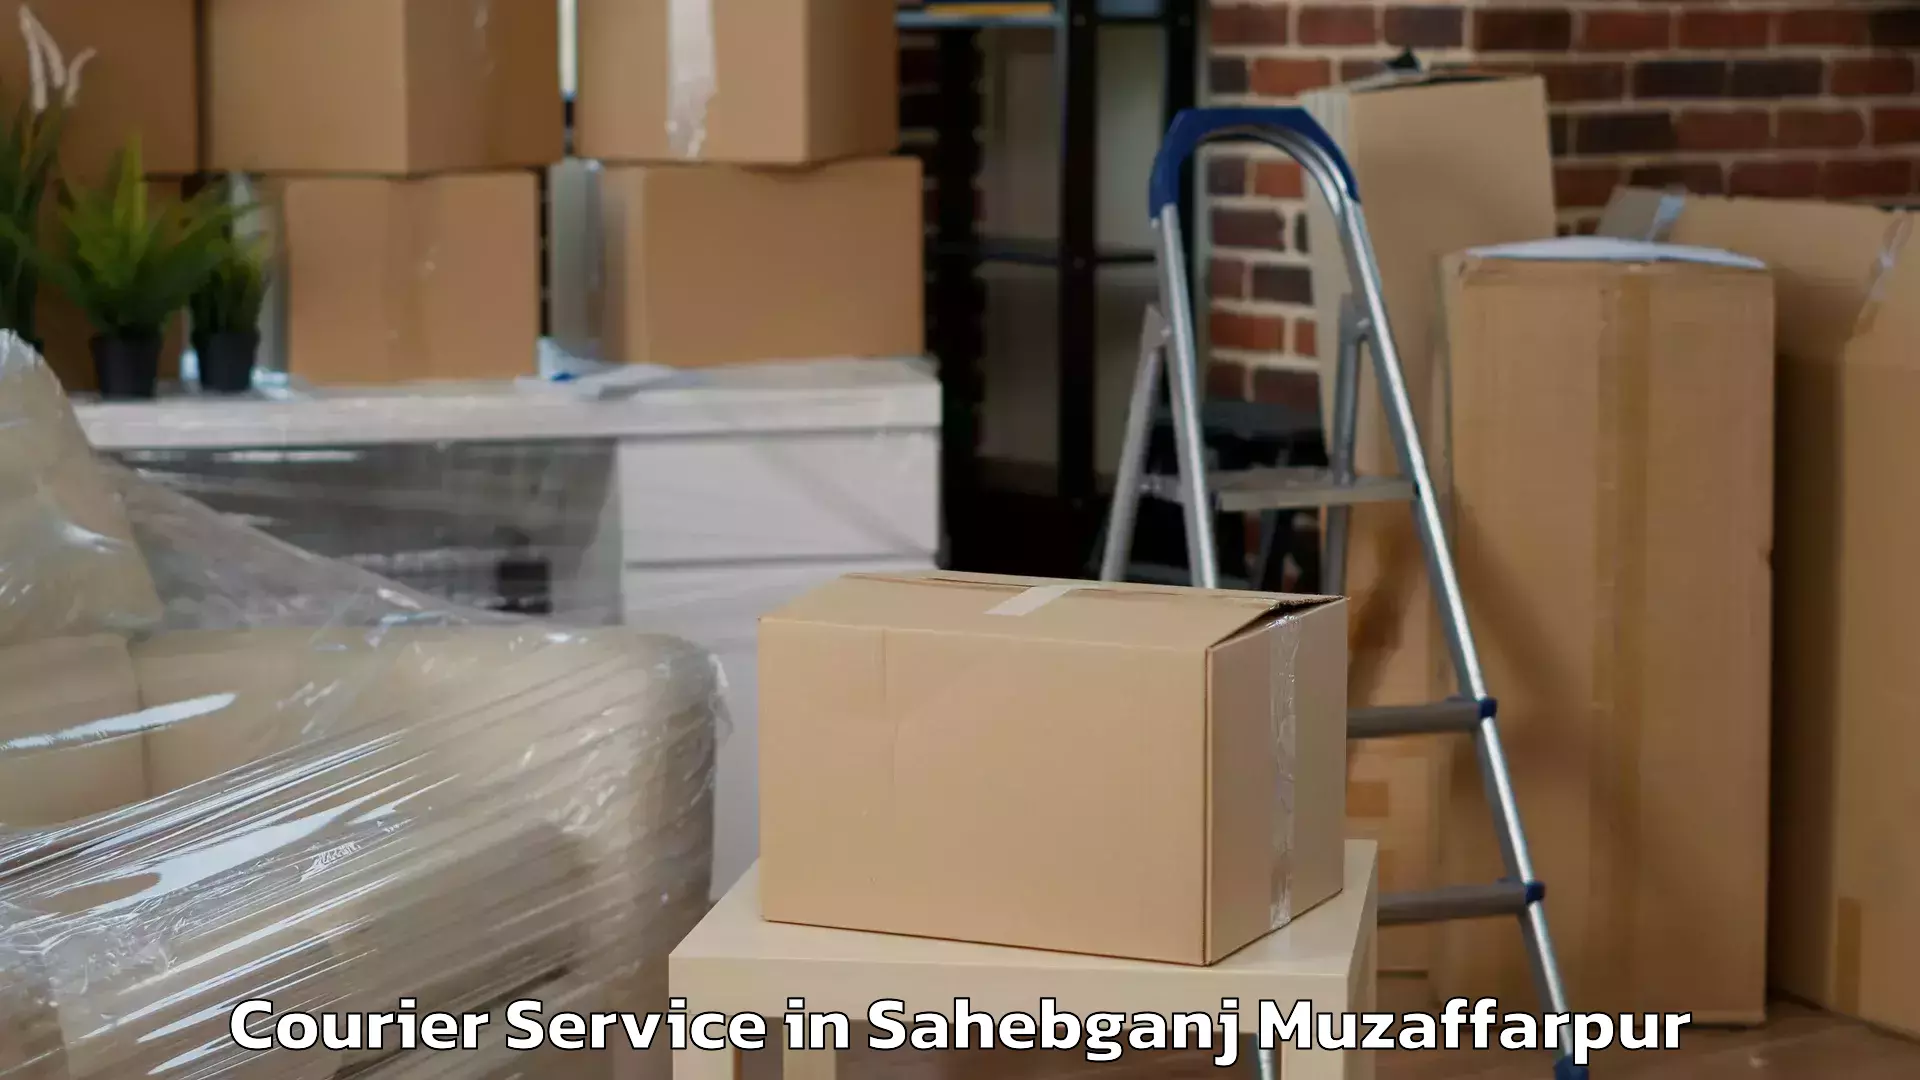 Courier services in Sahebganj Muzaffarpur